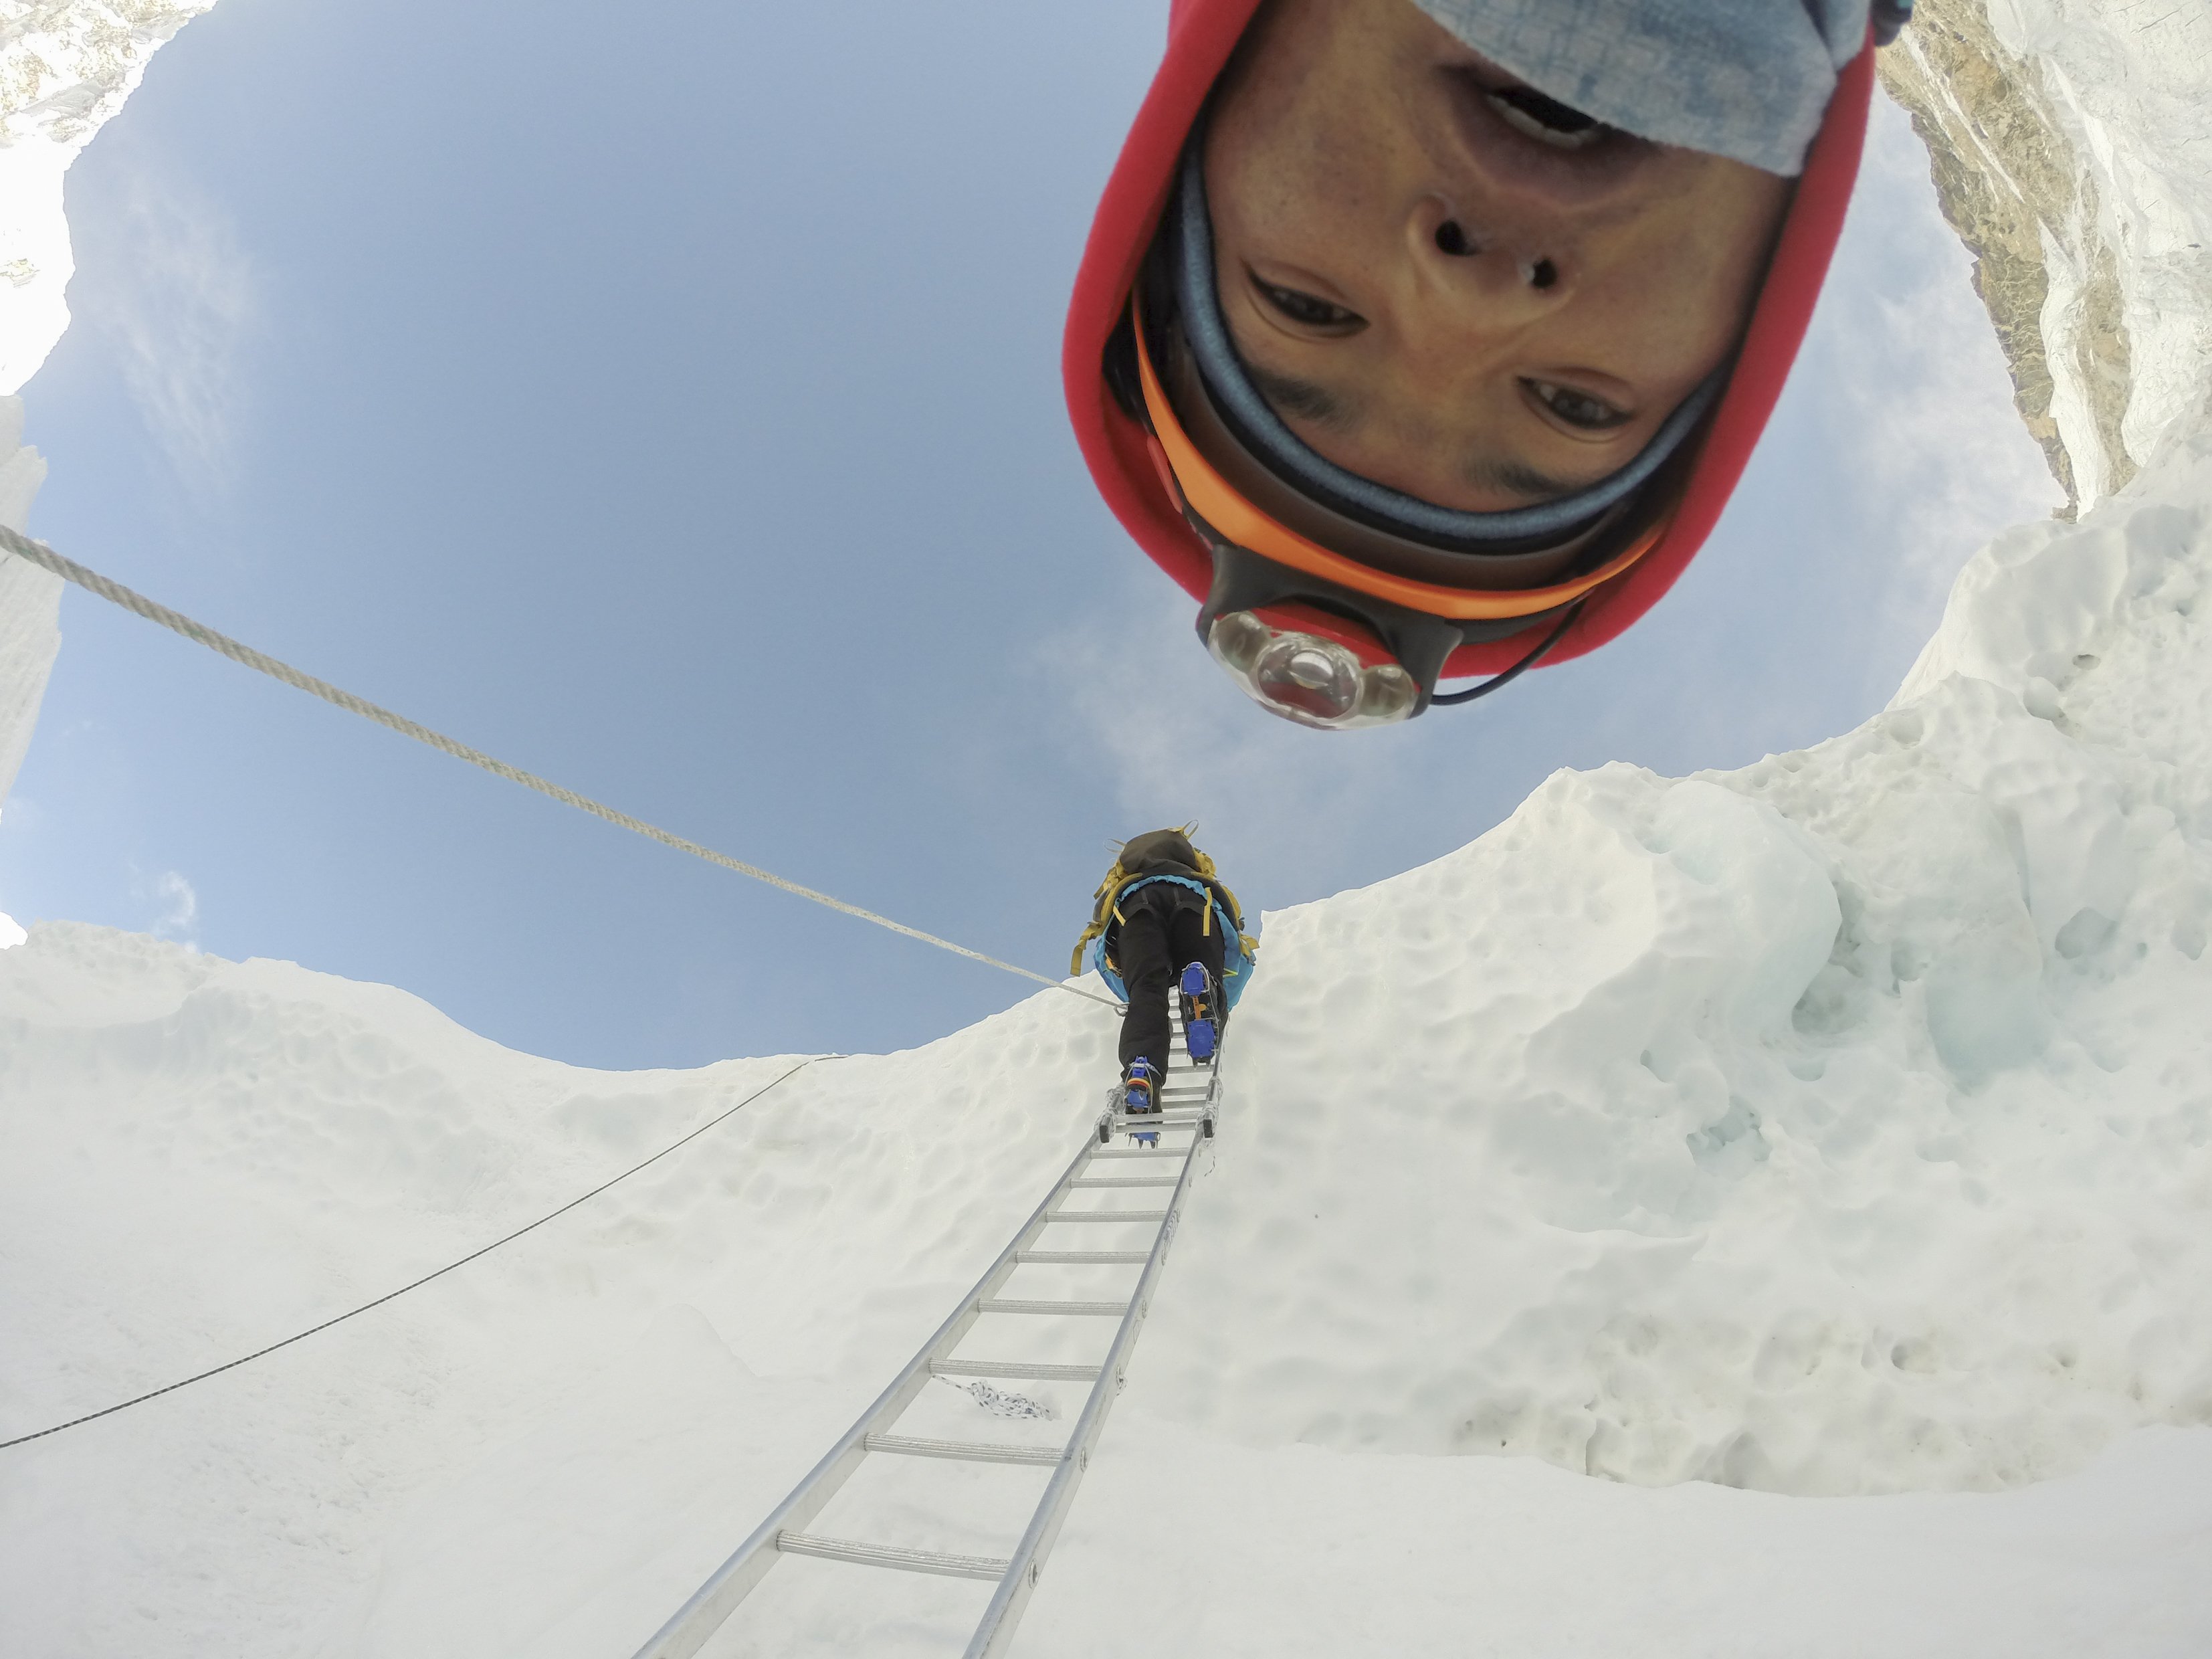 Sherpa climbing up a ladder Mount Everest